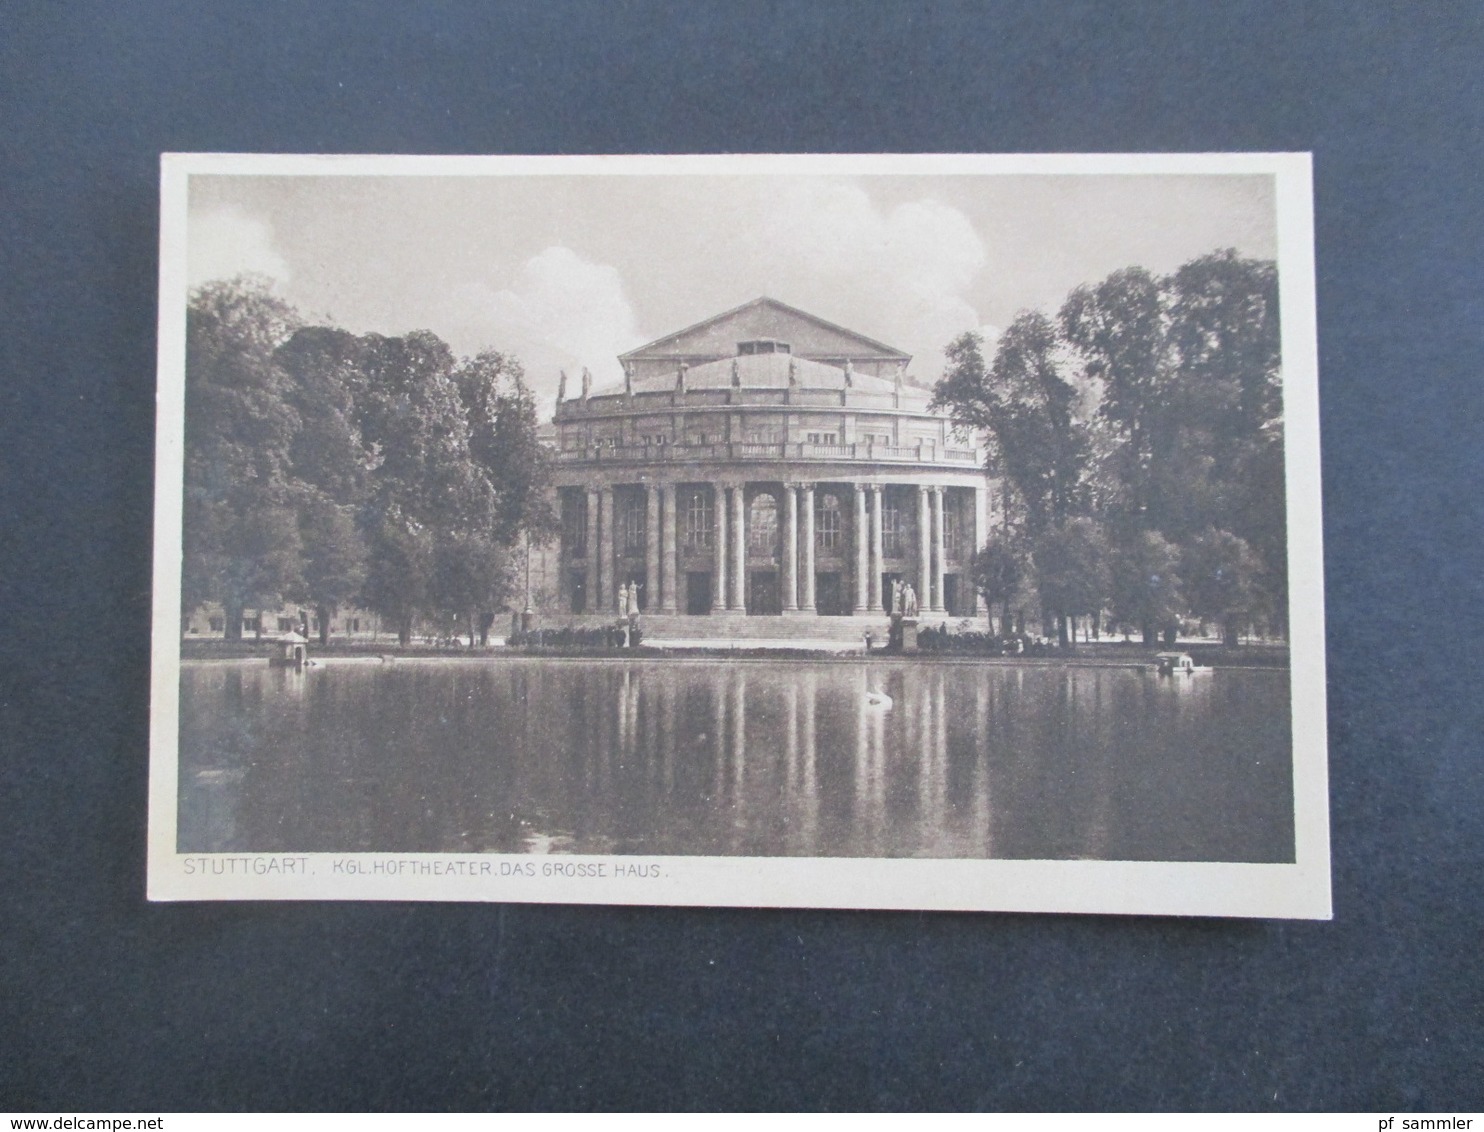 AK 1930er Jahre bis Anfang 1960 insgesamt 21 Karten mit verschiedenen Motiven Stuttgart